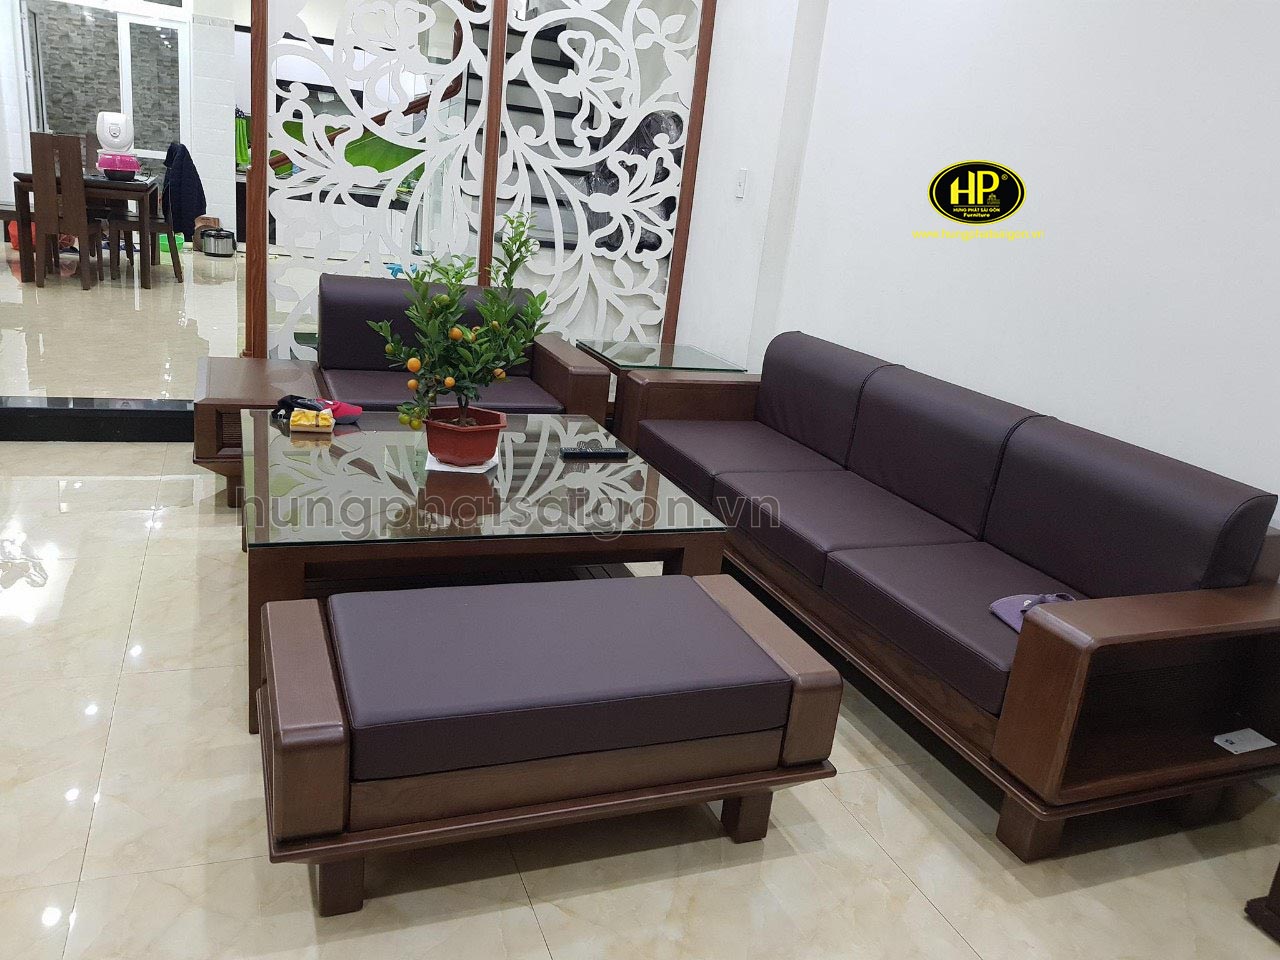 Ghế sofa gỗ sồi hiện đại cho phòng khách HS-21